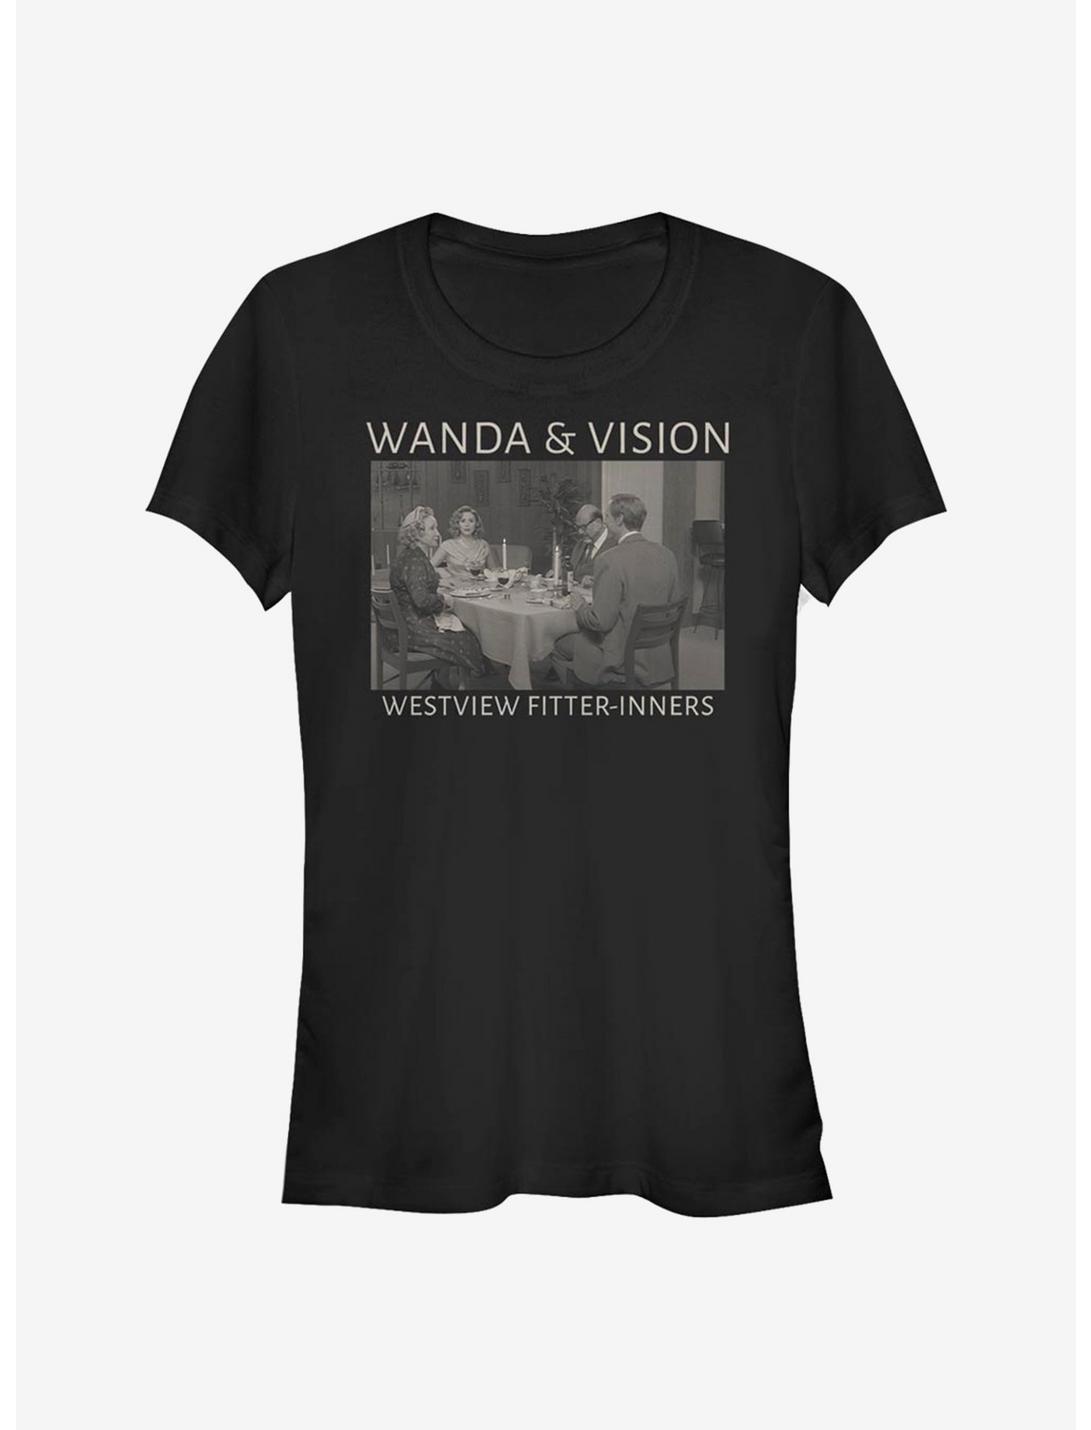 Marvel WandaVision Westview Fitter-Inners Girls T-Shirt, BLACK, hi-res